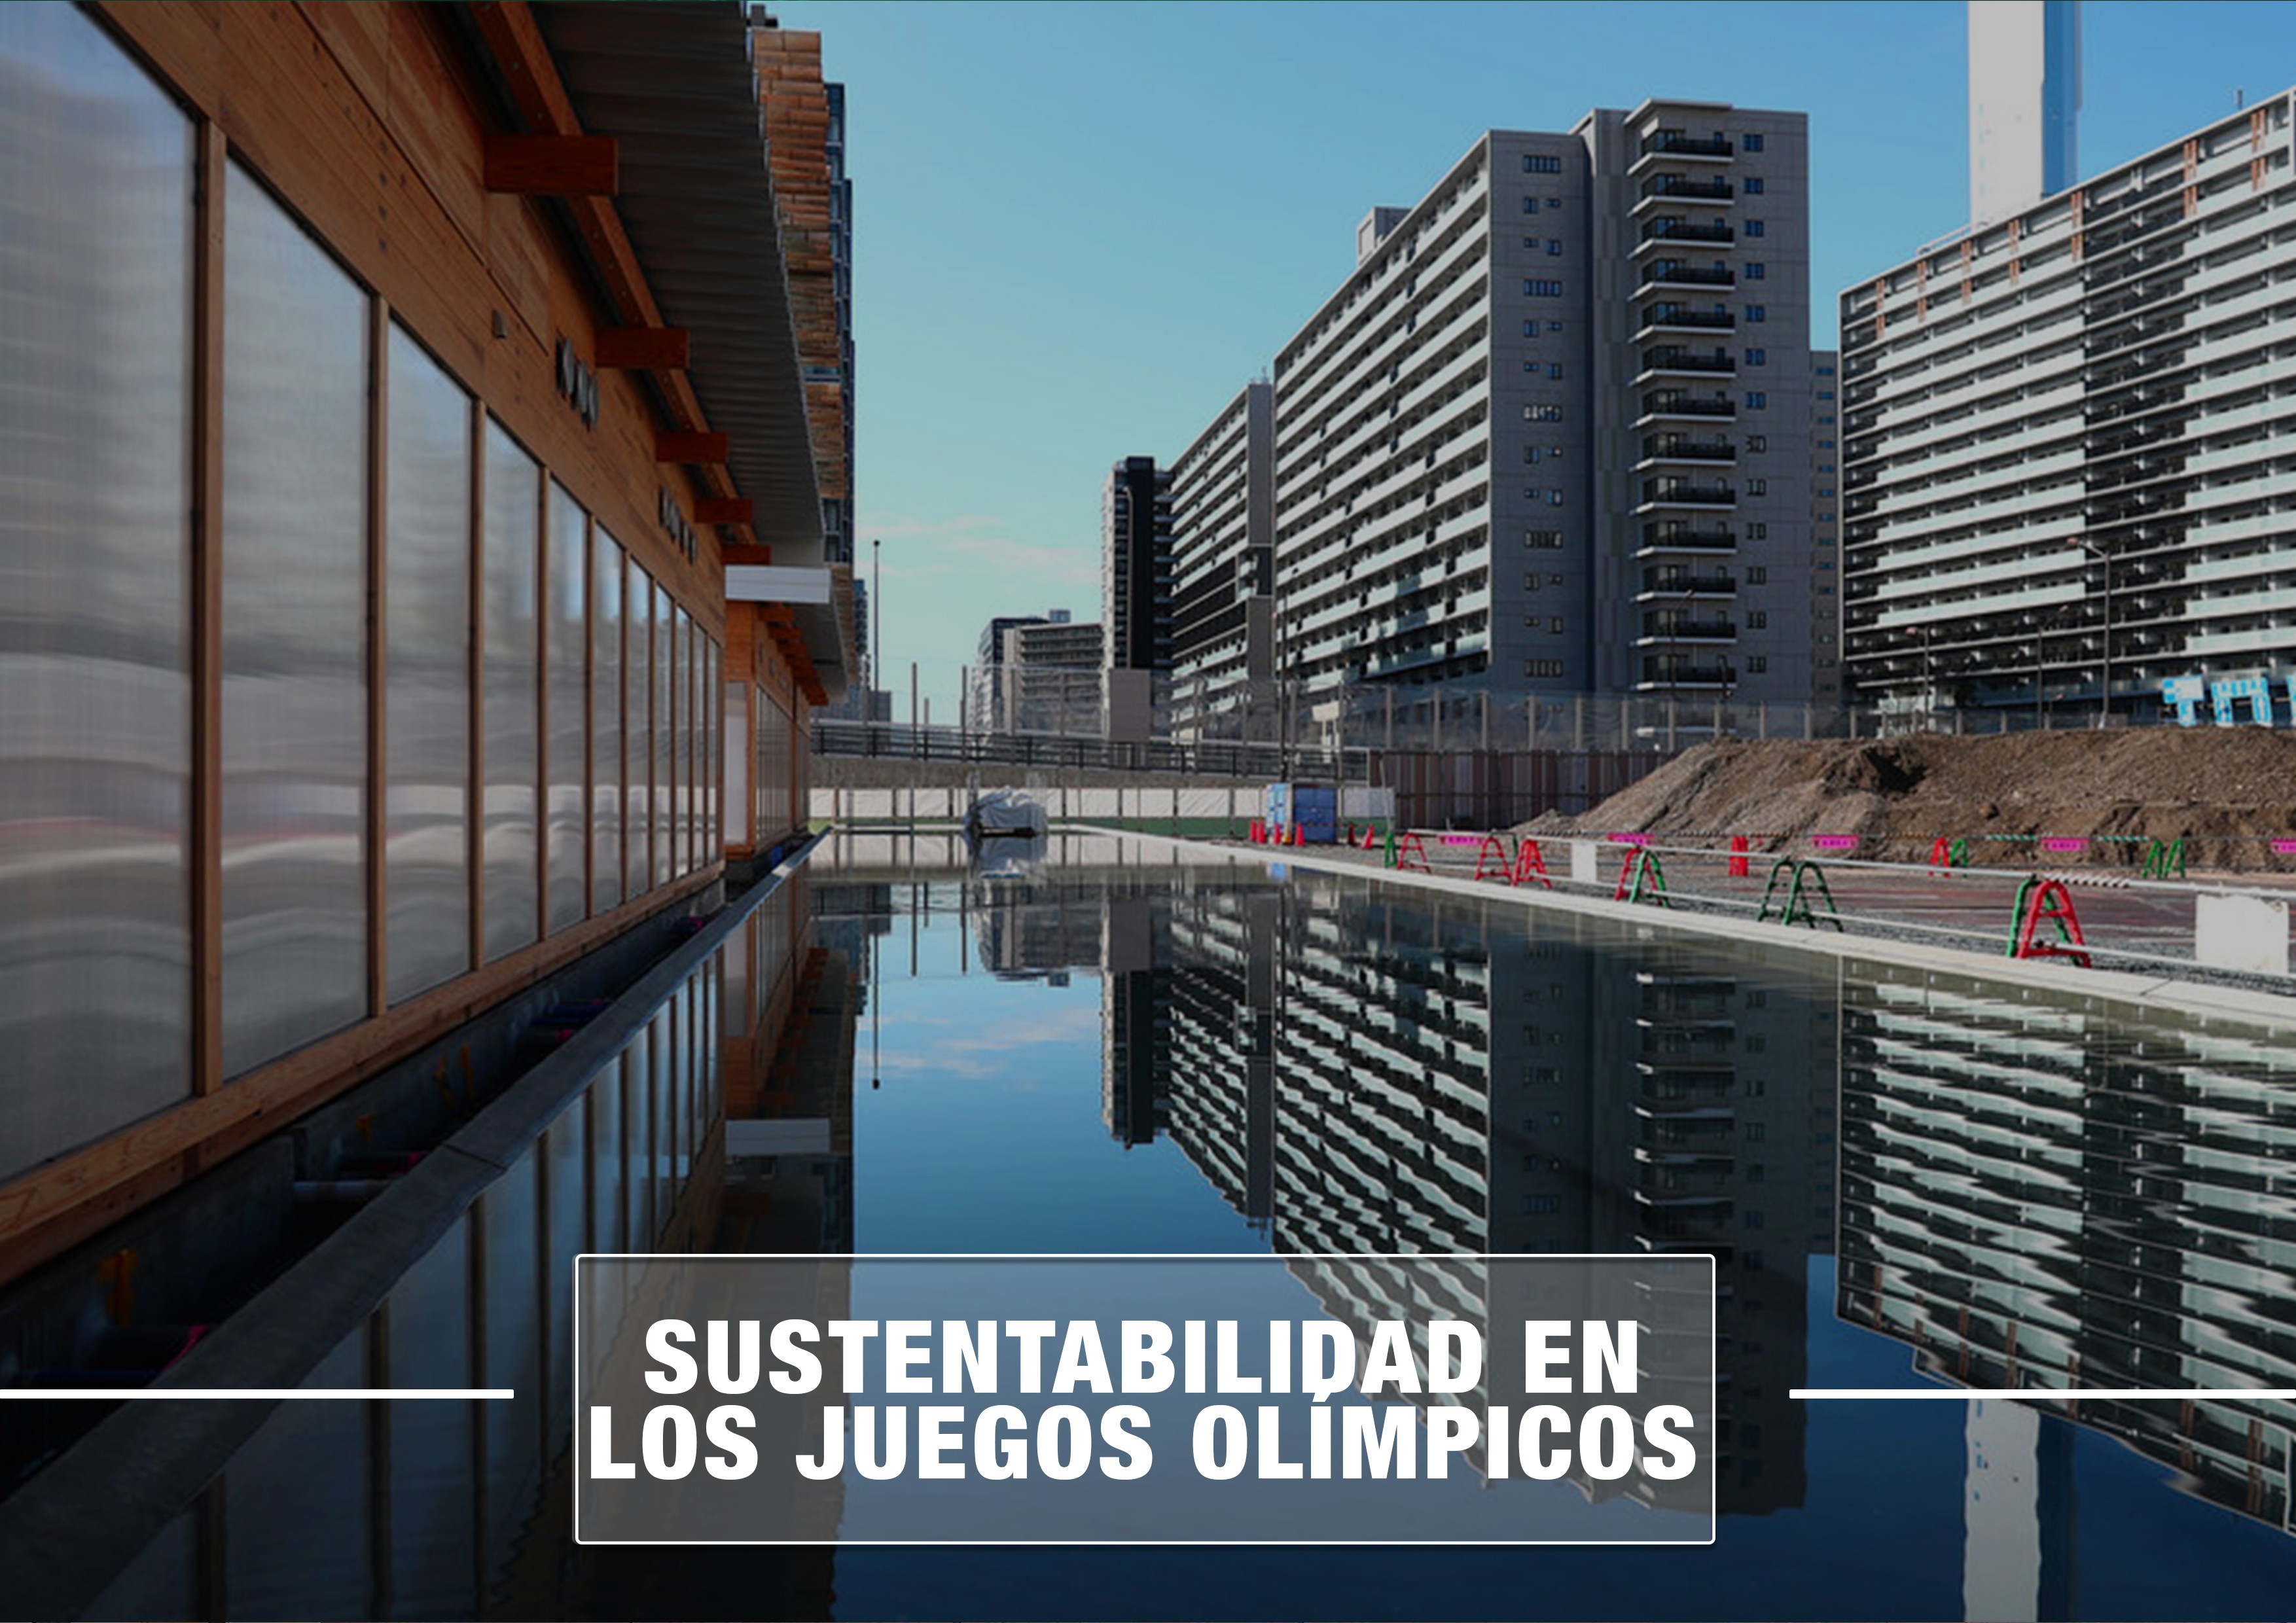 SUSTENTABILIDAD EN LOS JUEGOS OLMPICOS